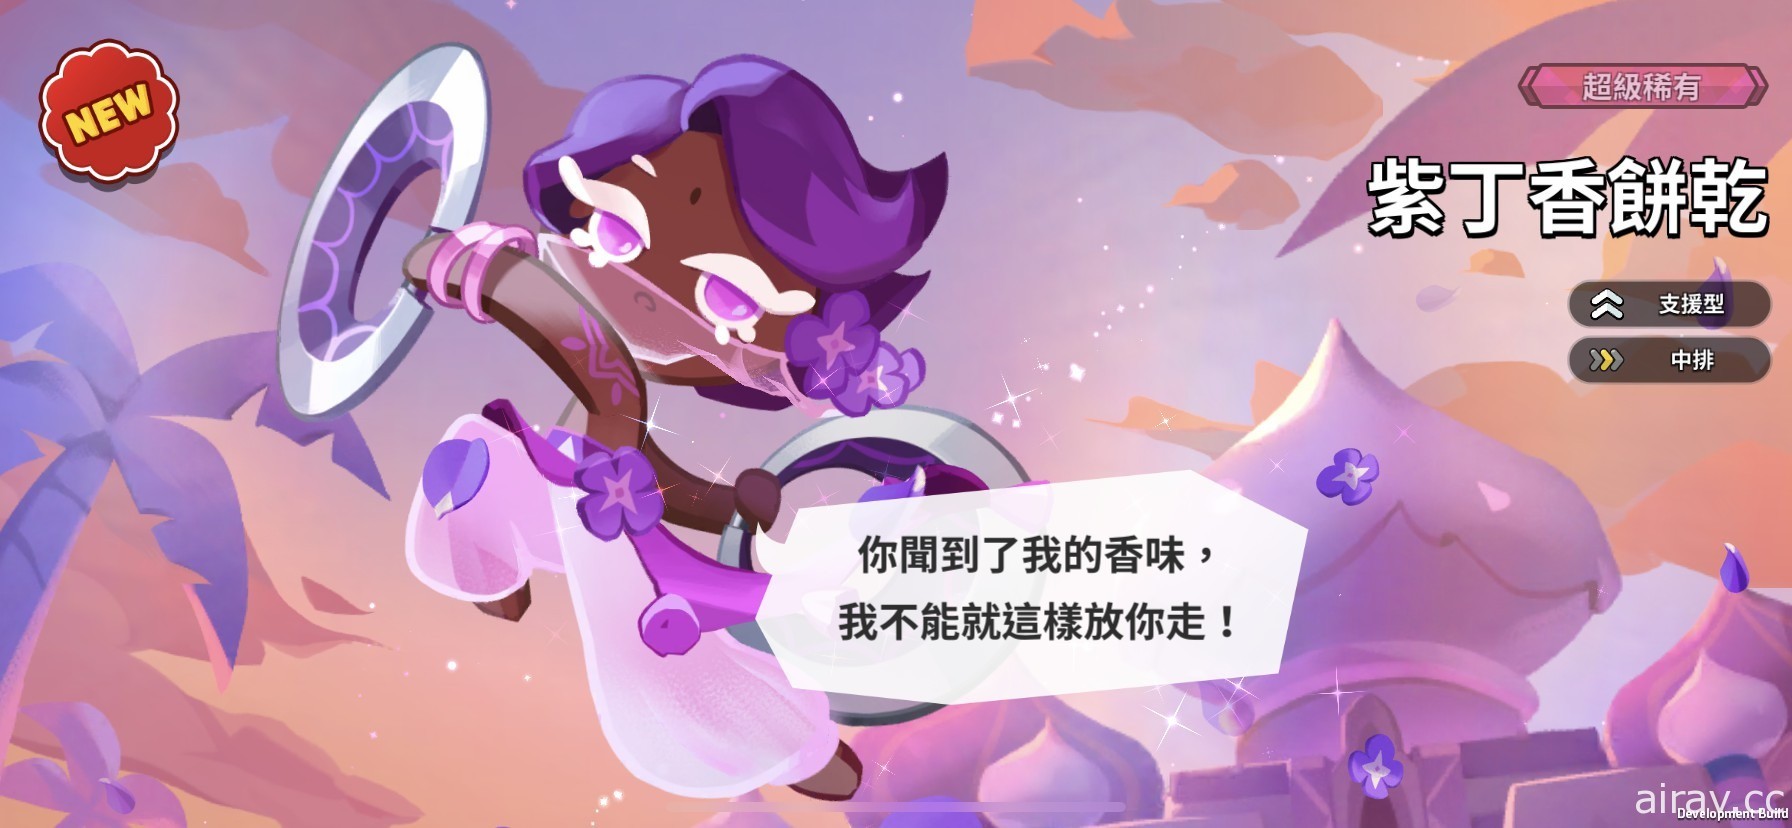 《姜饼人王国》推出限定改版活动 释出“紫丁香饼干”、饼干屋自选造型功能